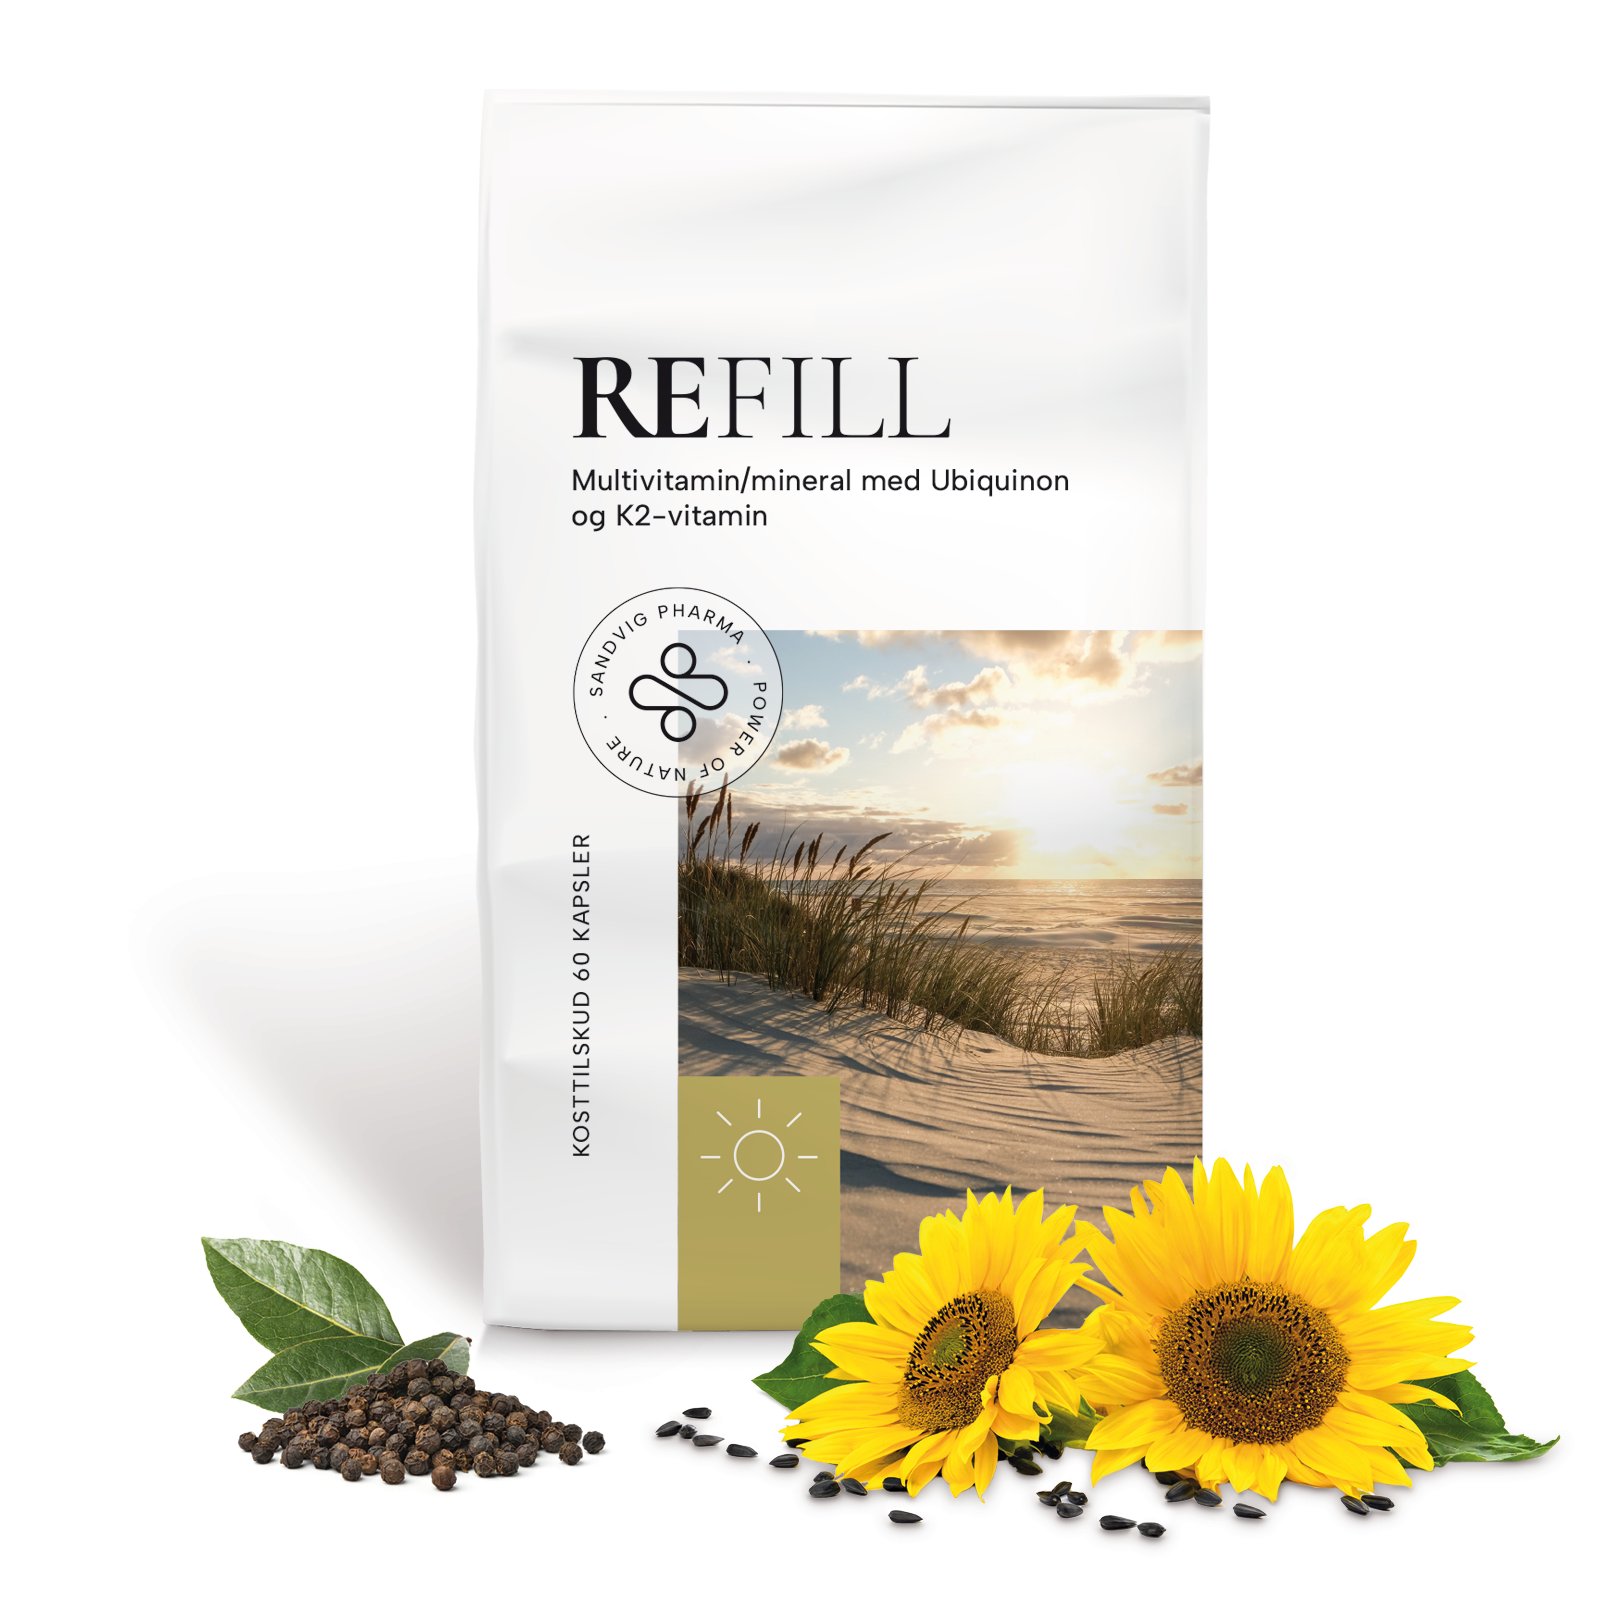 REFILL er et multivitamin med Q10 og K2-vitamin.